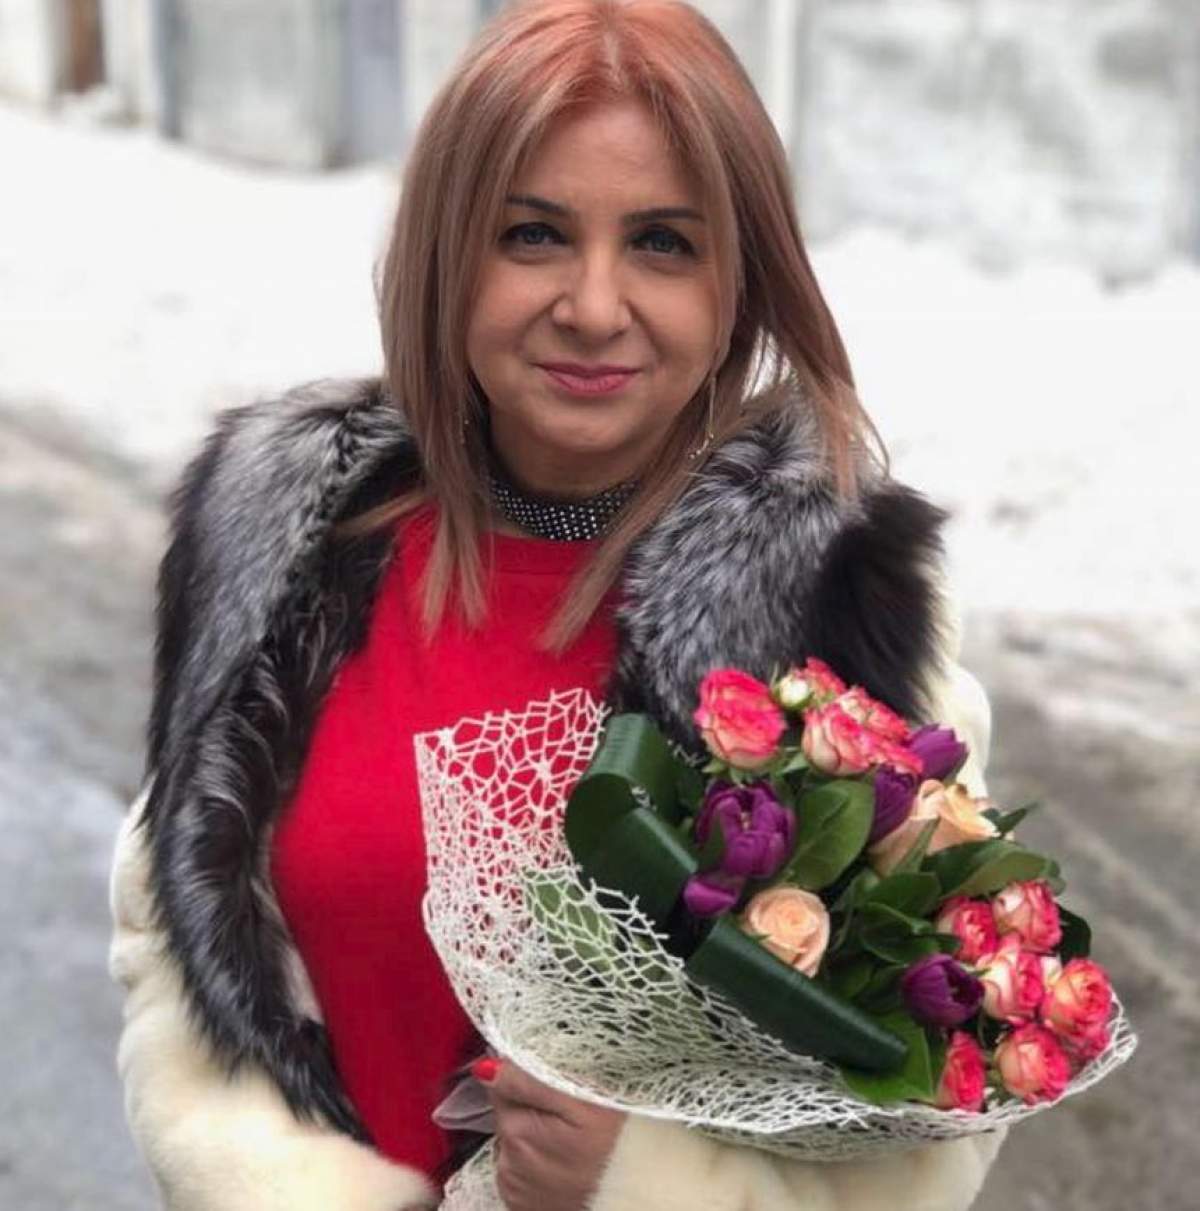 VIDEO / Bucurie fără margini în viaţa lui Carmen Şerban. Anul viitor urmează nunta